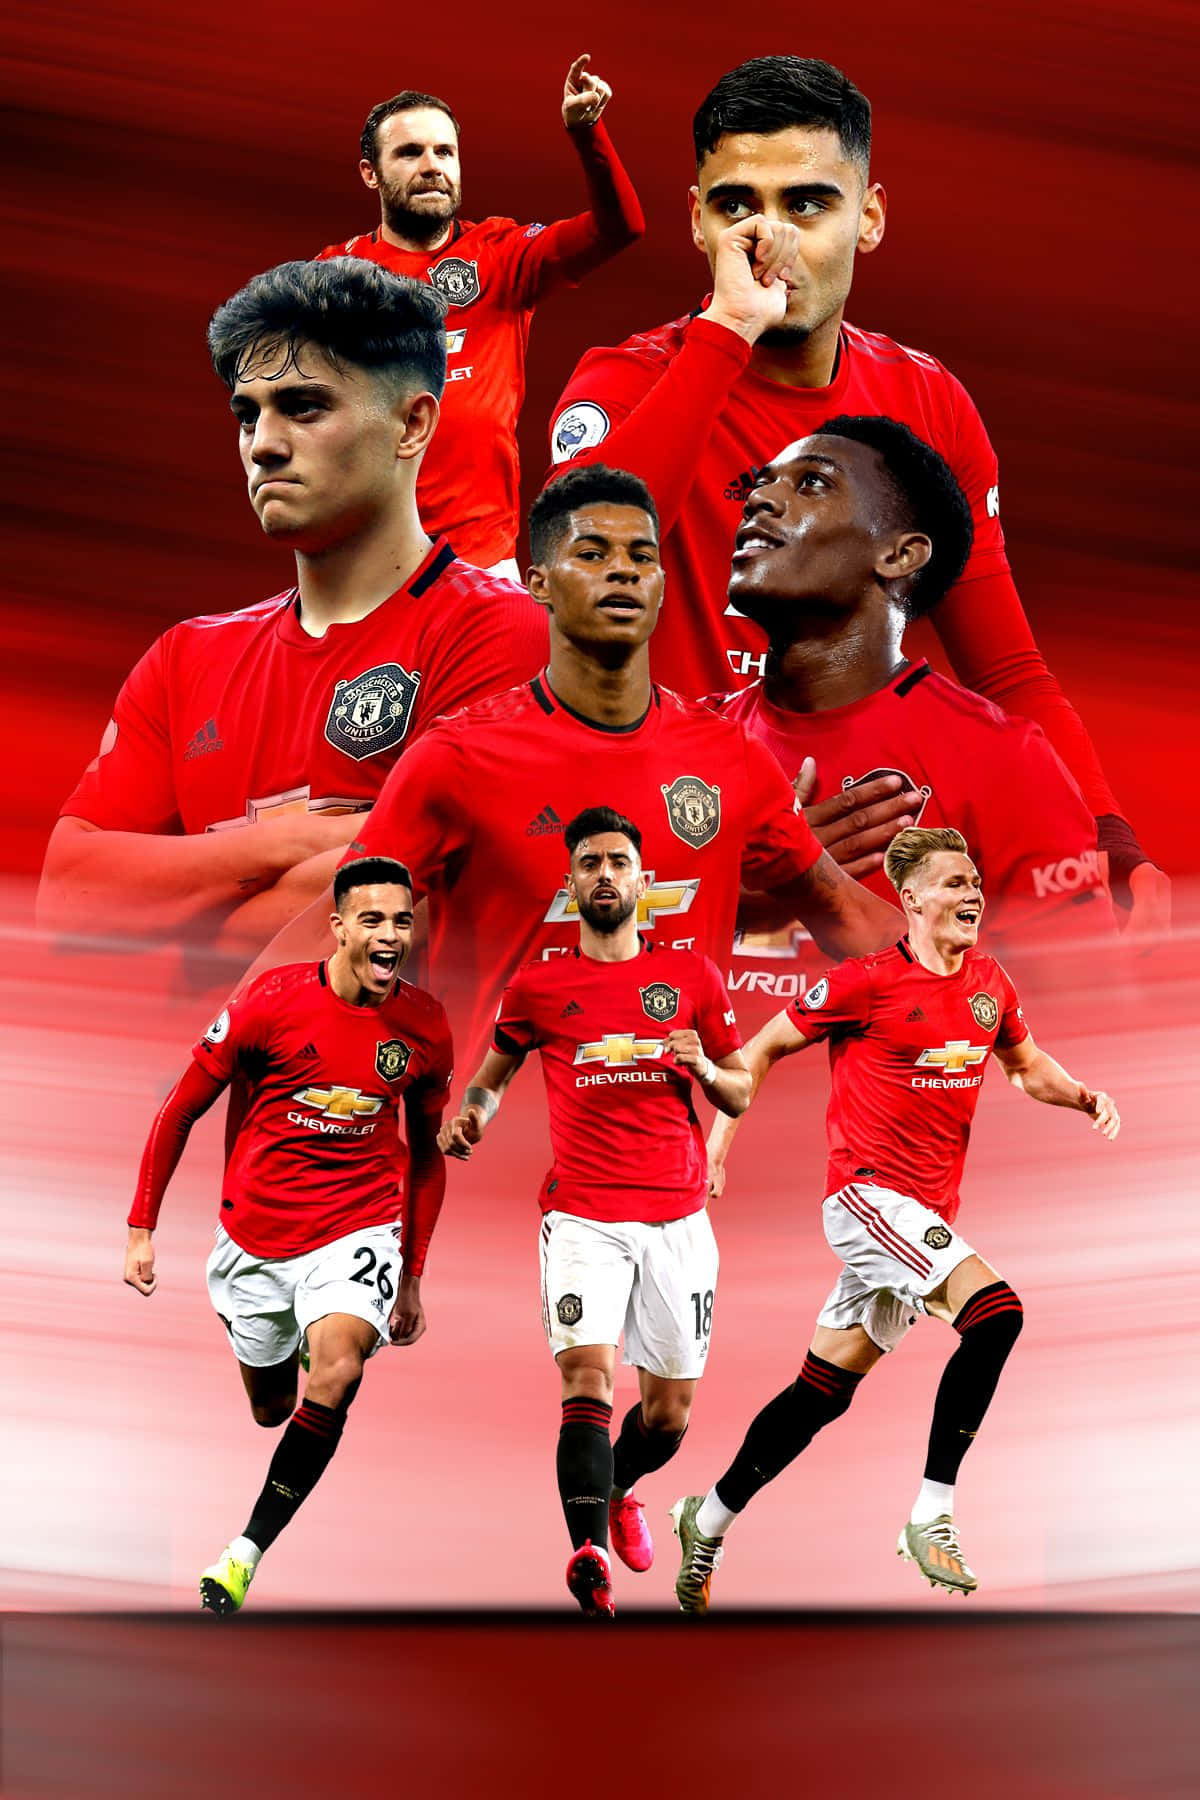 Derneue Look Von Manchester United - Wieder Vereint In Rot Wallpaper